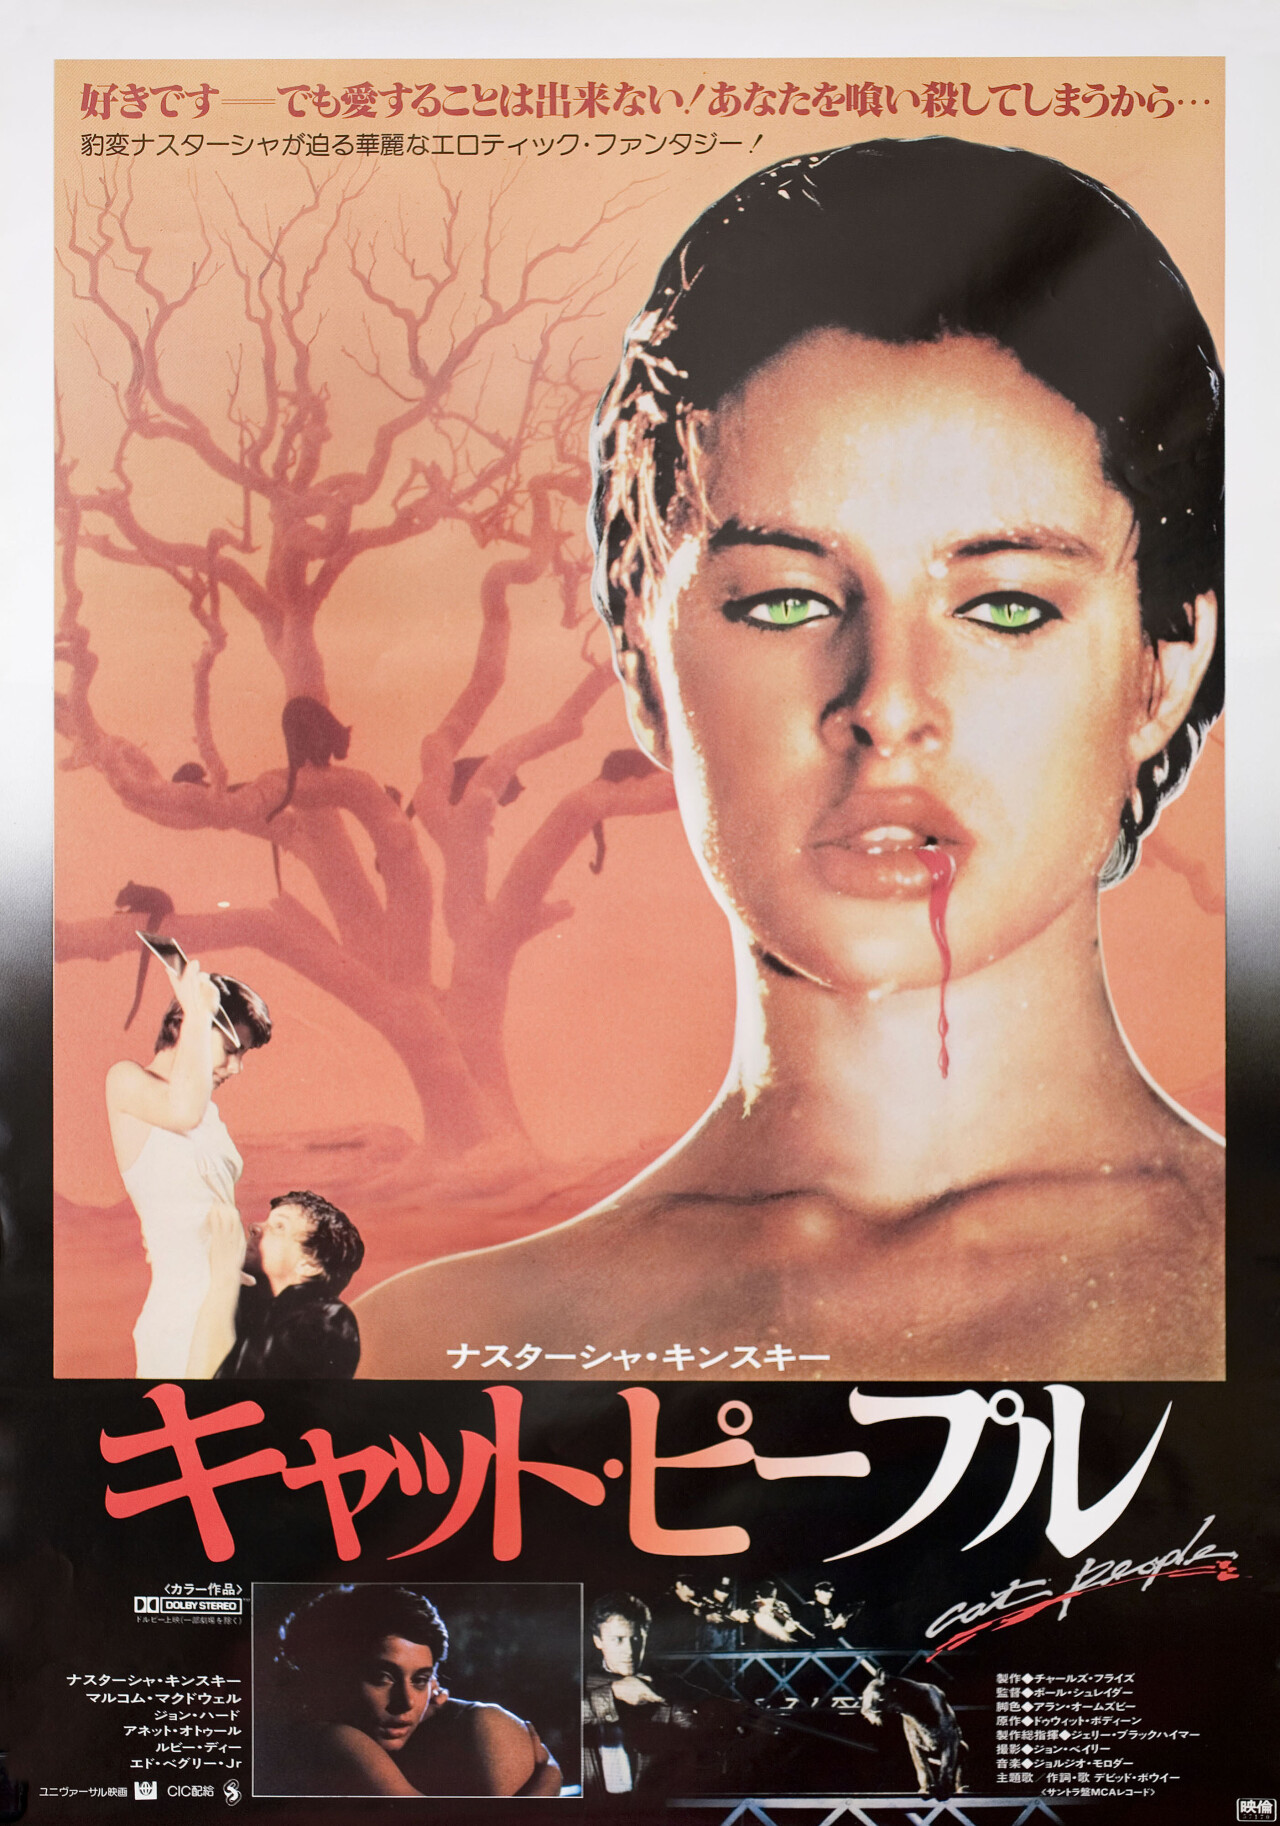 Люди-кошки (Cat People, 1982), режиссёр Пол Шредер, японский постер к фильму (ужасы, 1982)